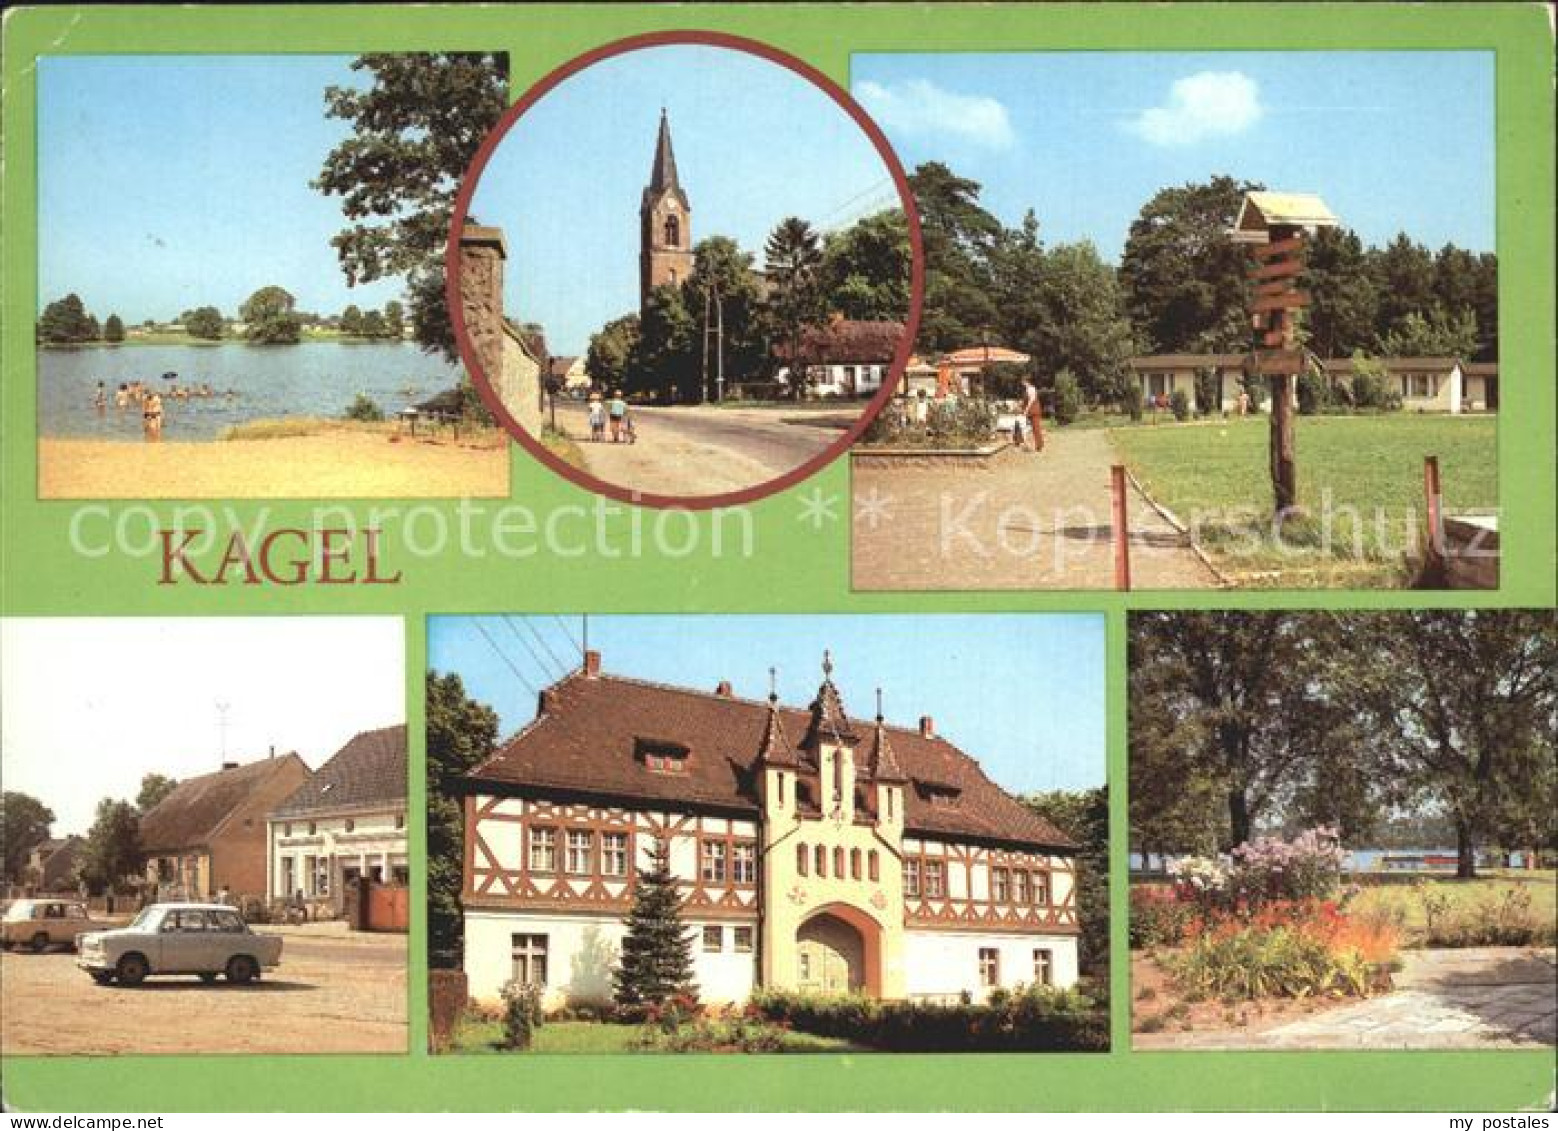 72332187 Kagel Bauernsee Kirche Naherholungszentrum Dorfstrasse Kinderferienlage - Gruenheide